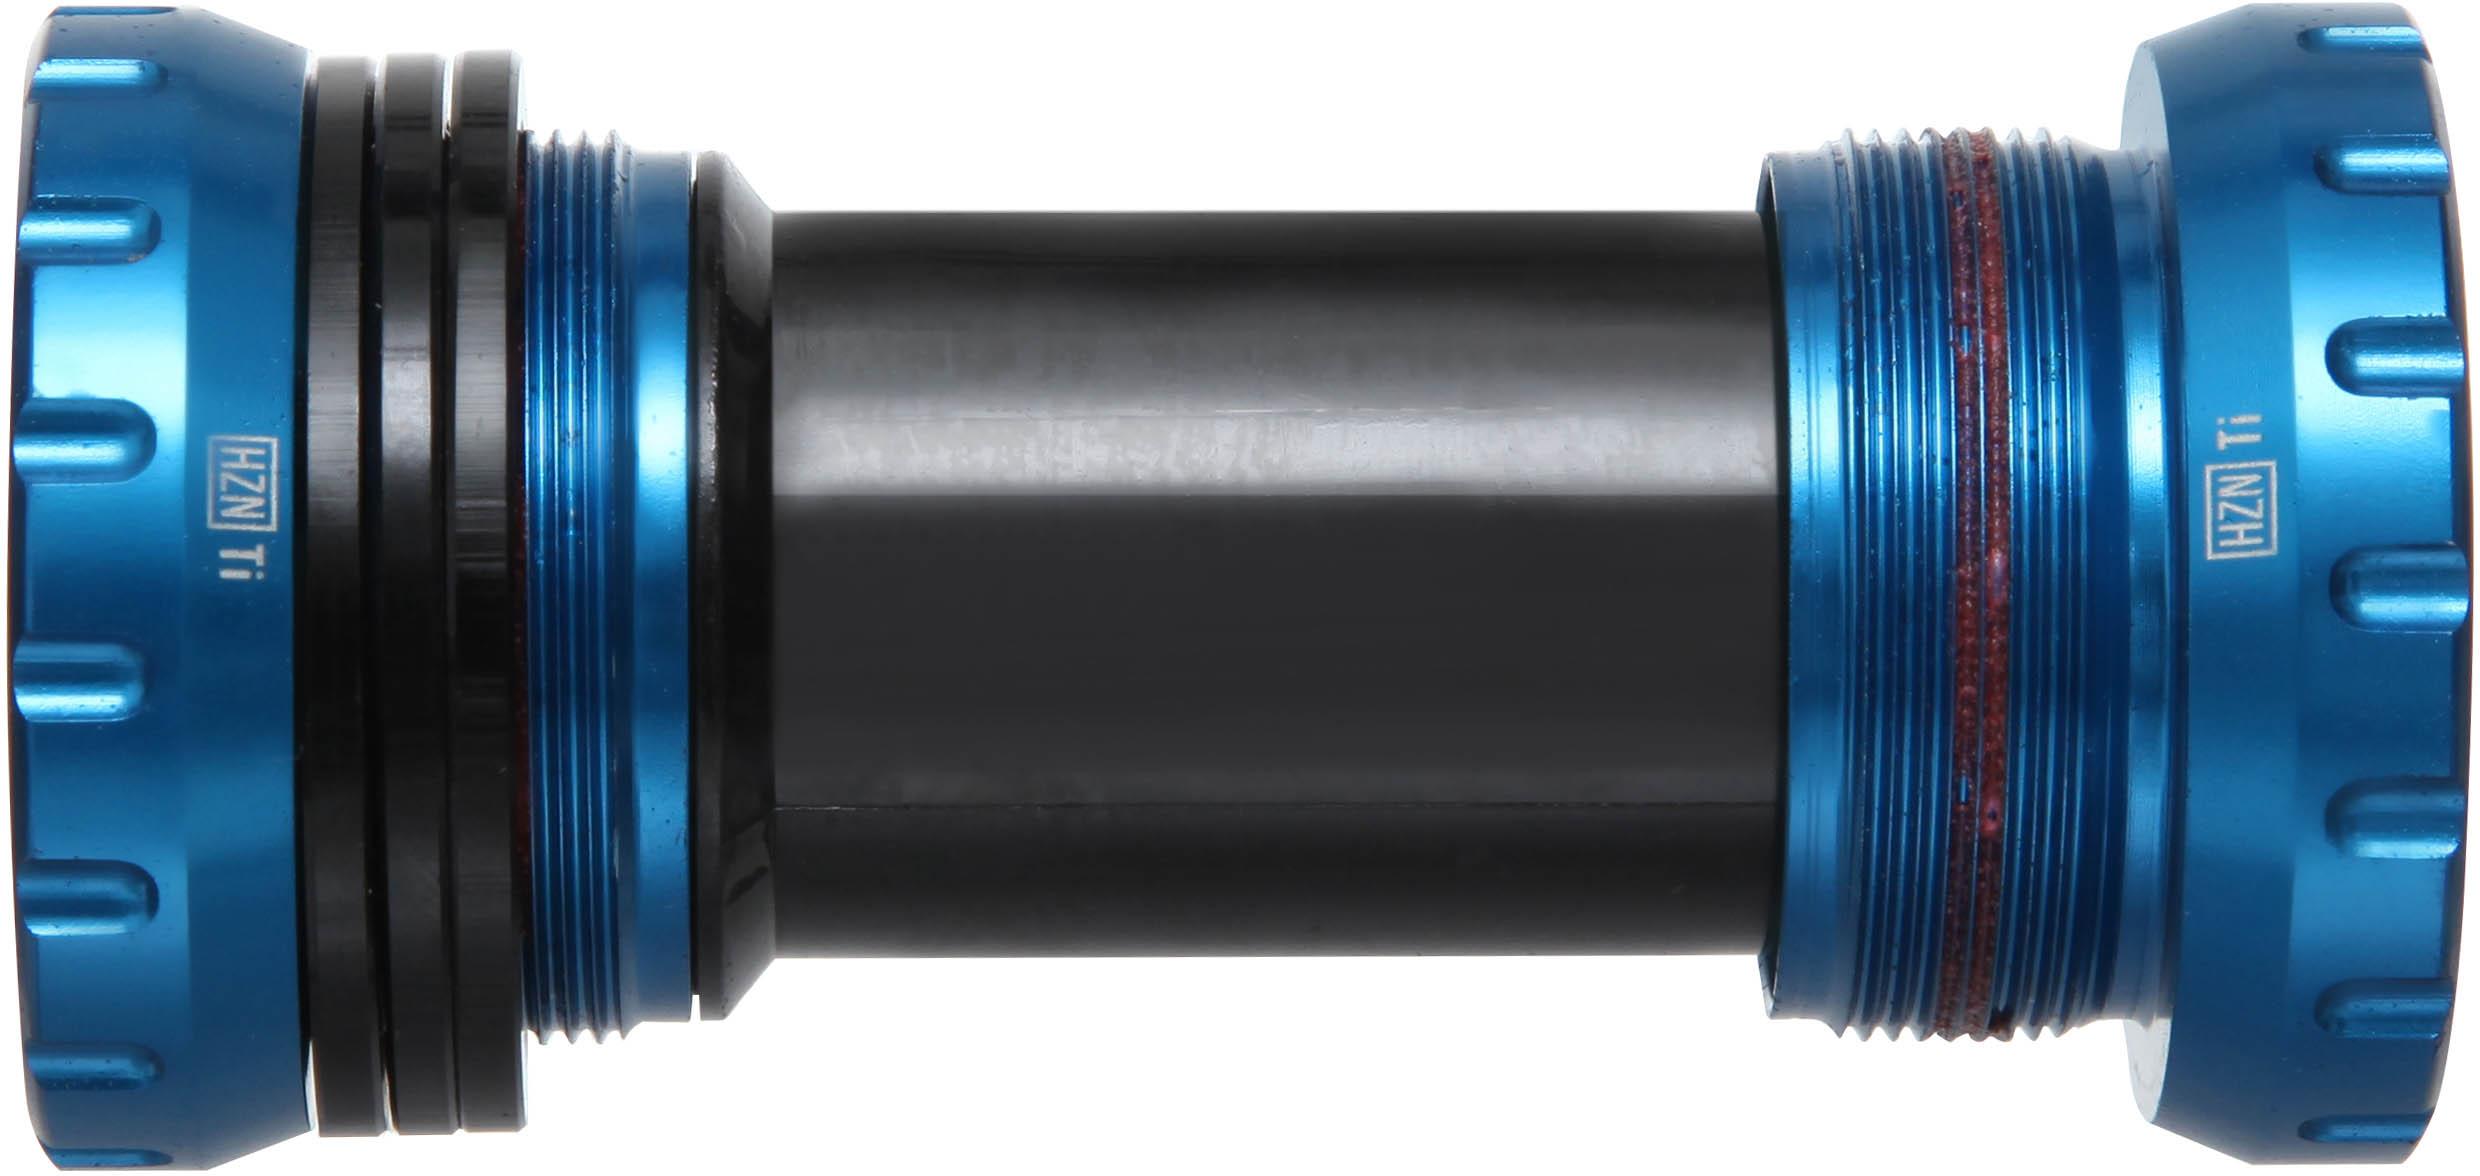 Nukeproof Horizon Shimano Bottom Bracket (24mm)  Blue